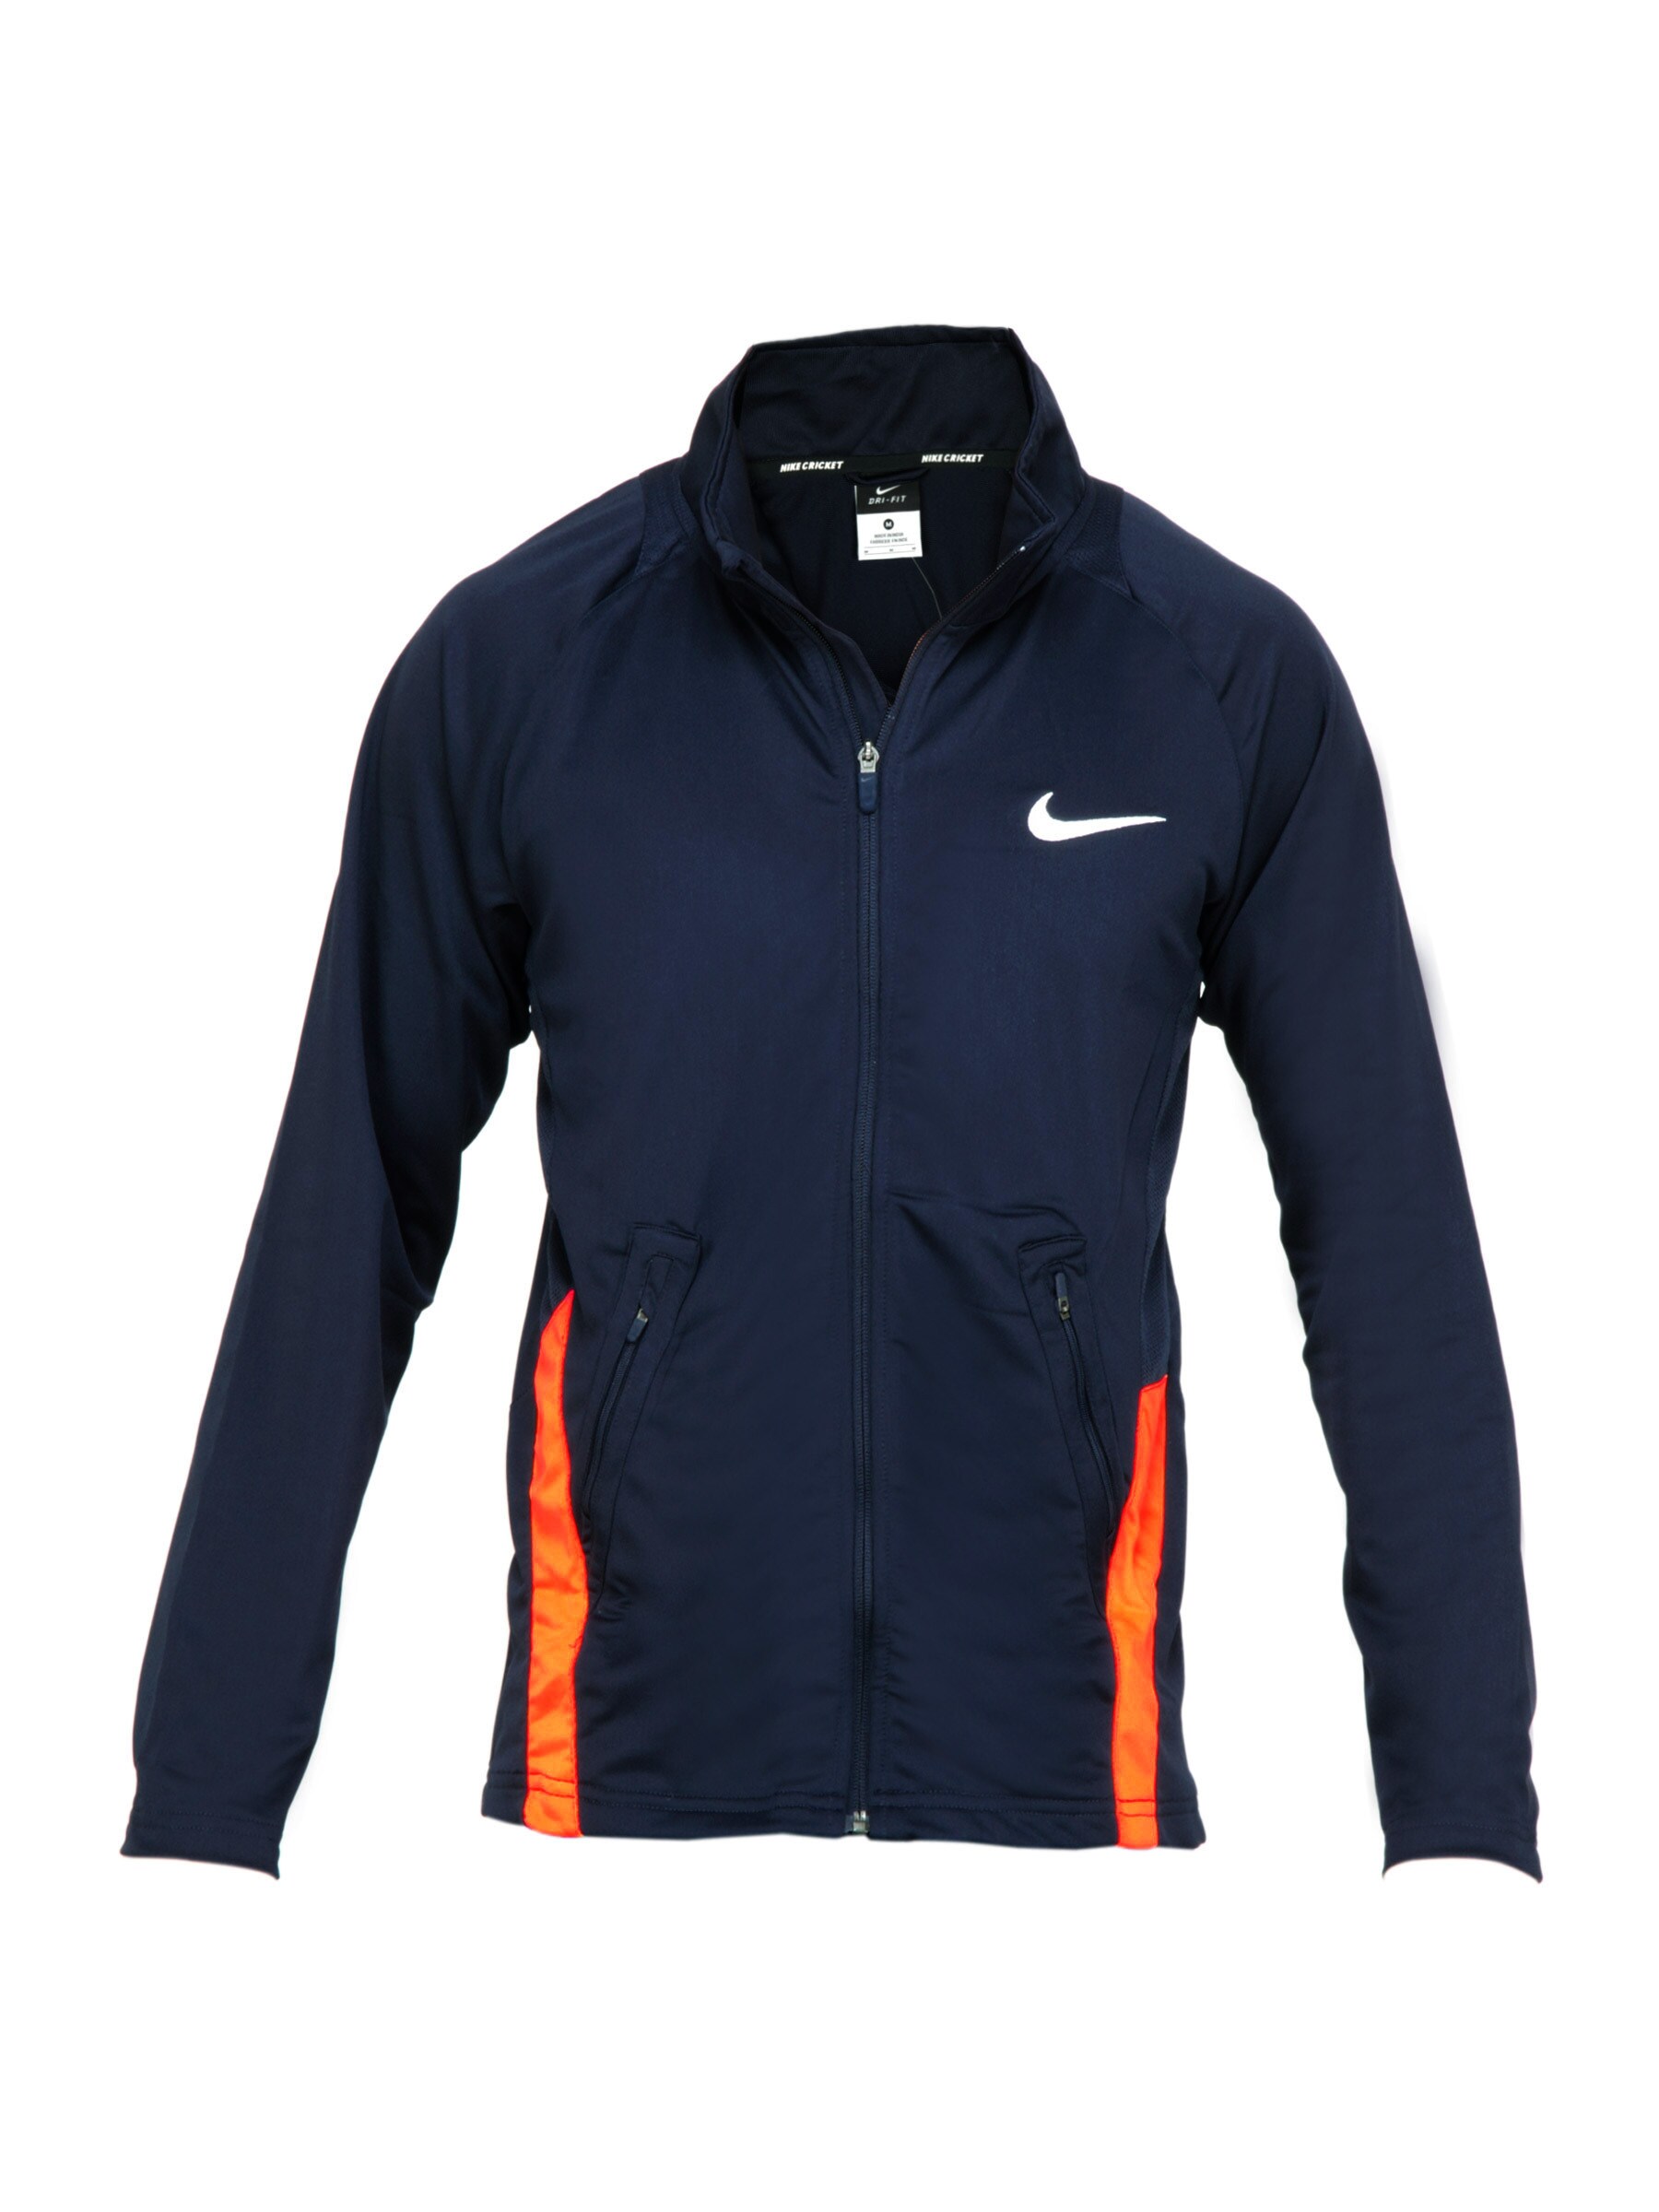 Nike Men Solid Navy Blue Jacket